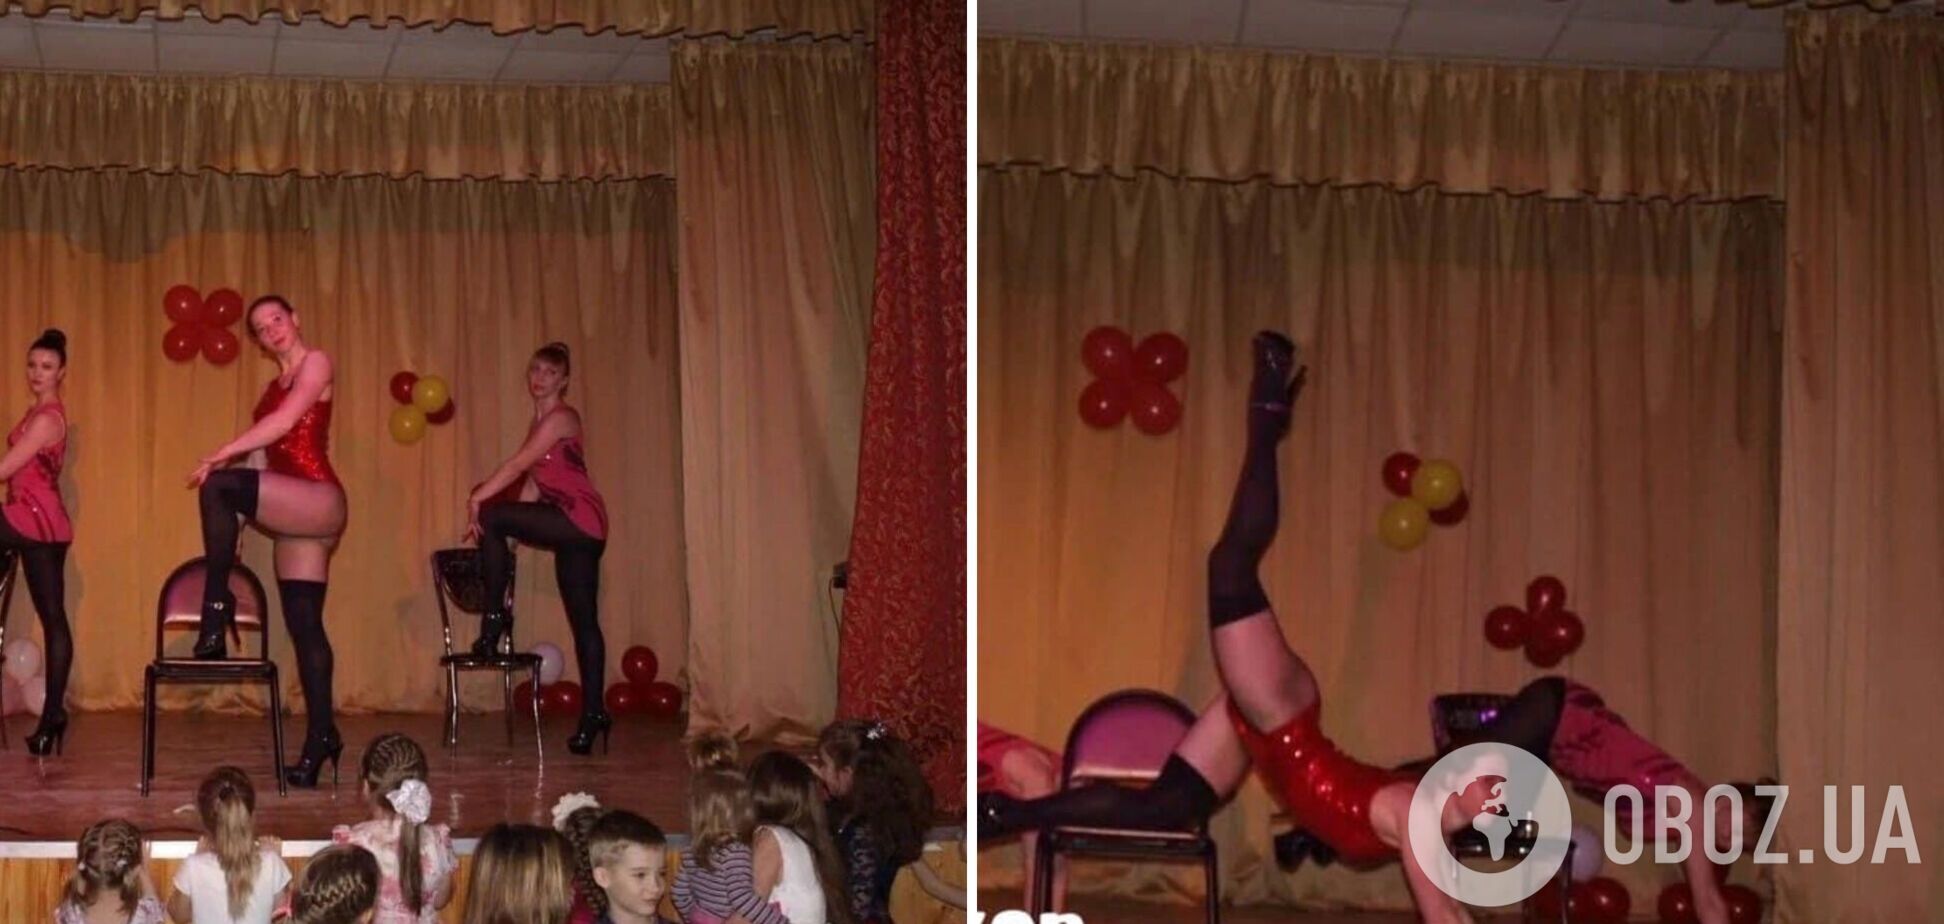 В России на детском мероприятии показали 'танцы для взрослых', разгорелся скандал. Фото